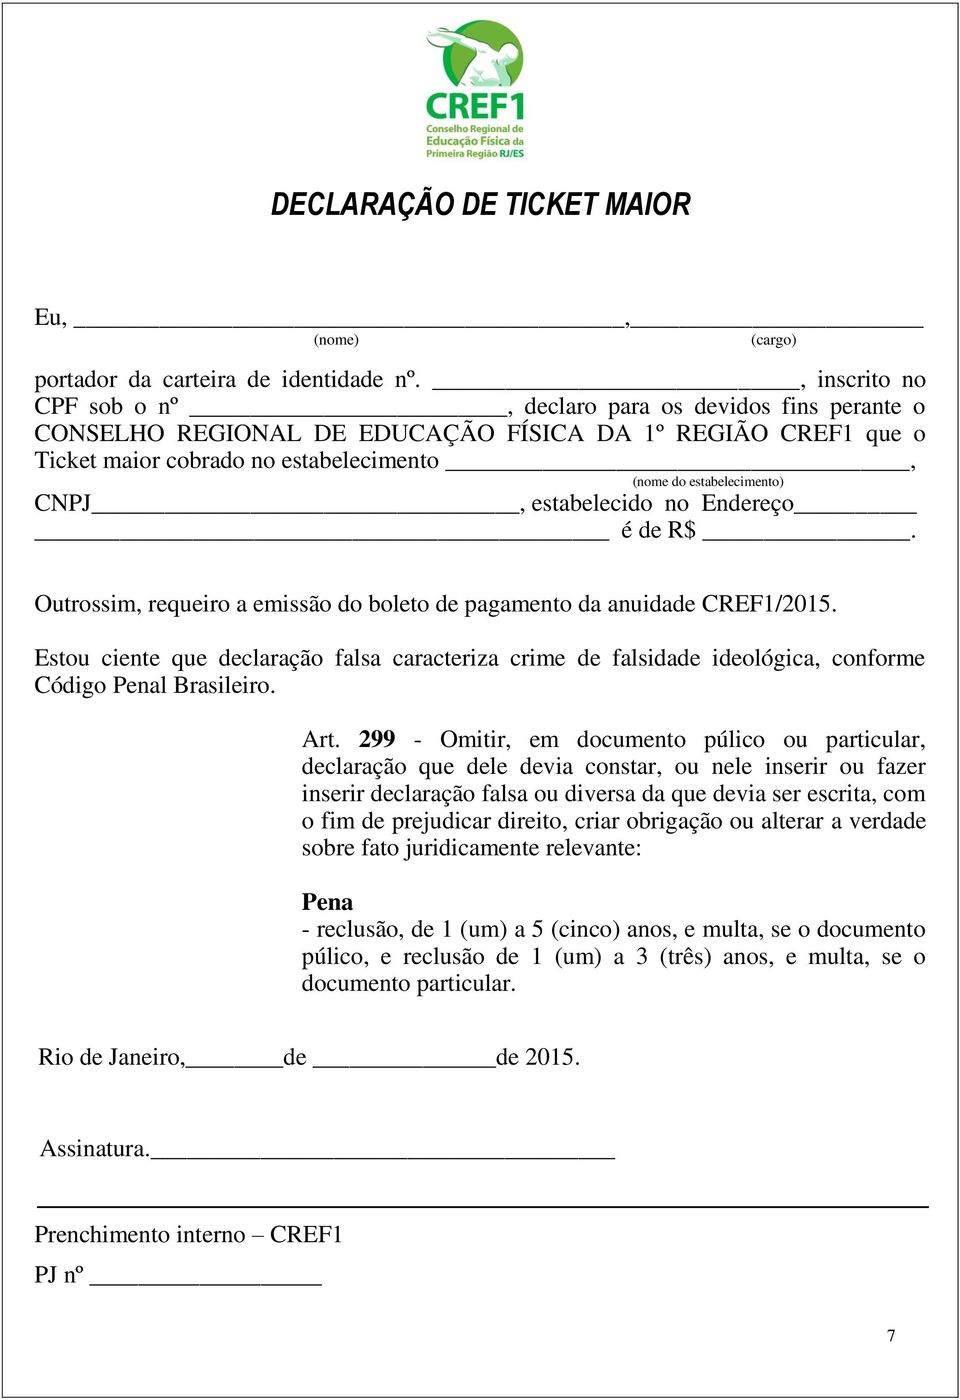 CNPJ, estabelecido no Endereço é de R$. Outrossim, requeiro a emissão do boleto de pagamento da anuidade CREF1/2015.